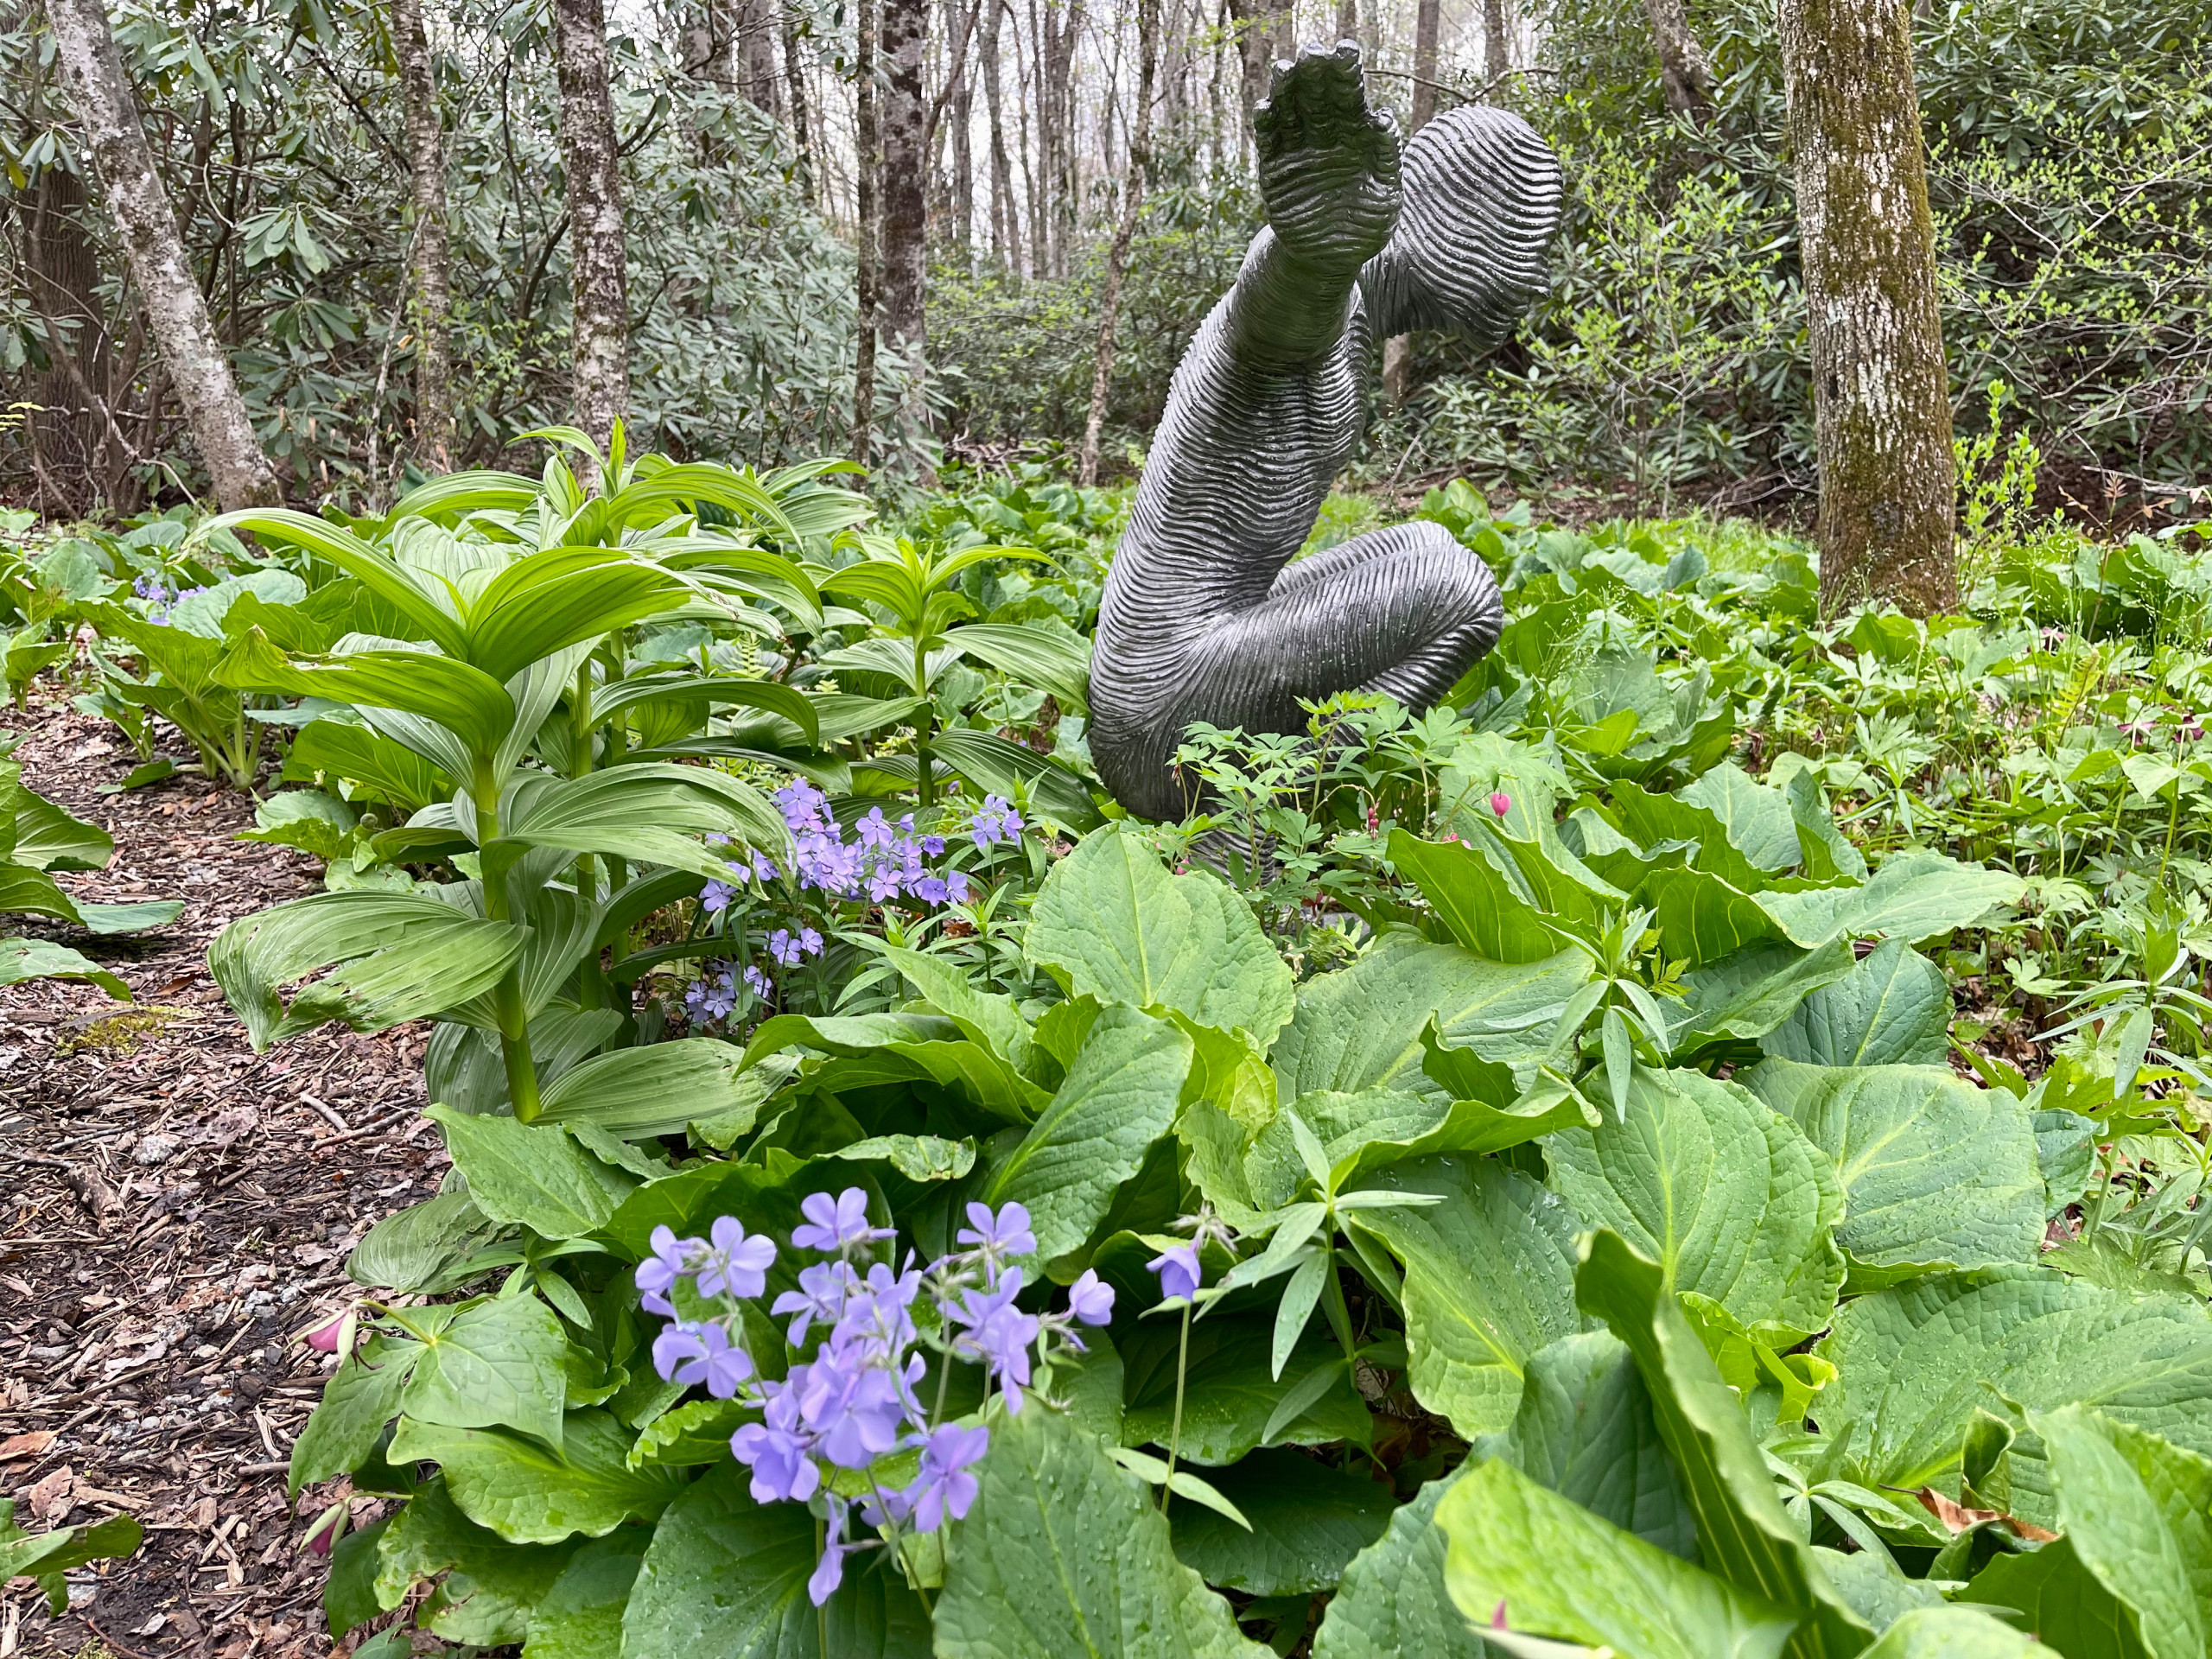 Garden Sculpture in Spring